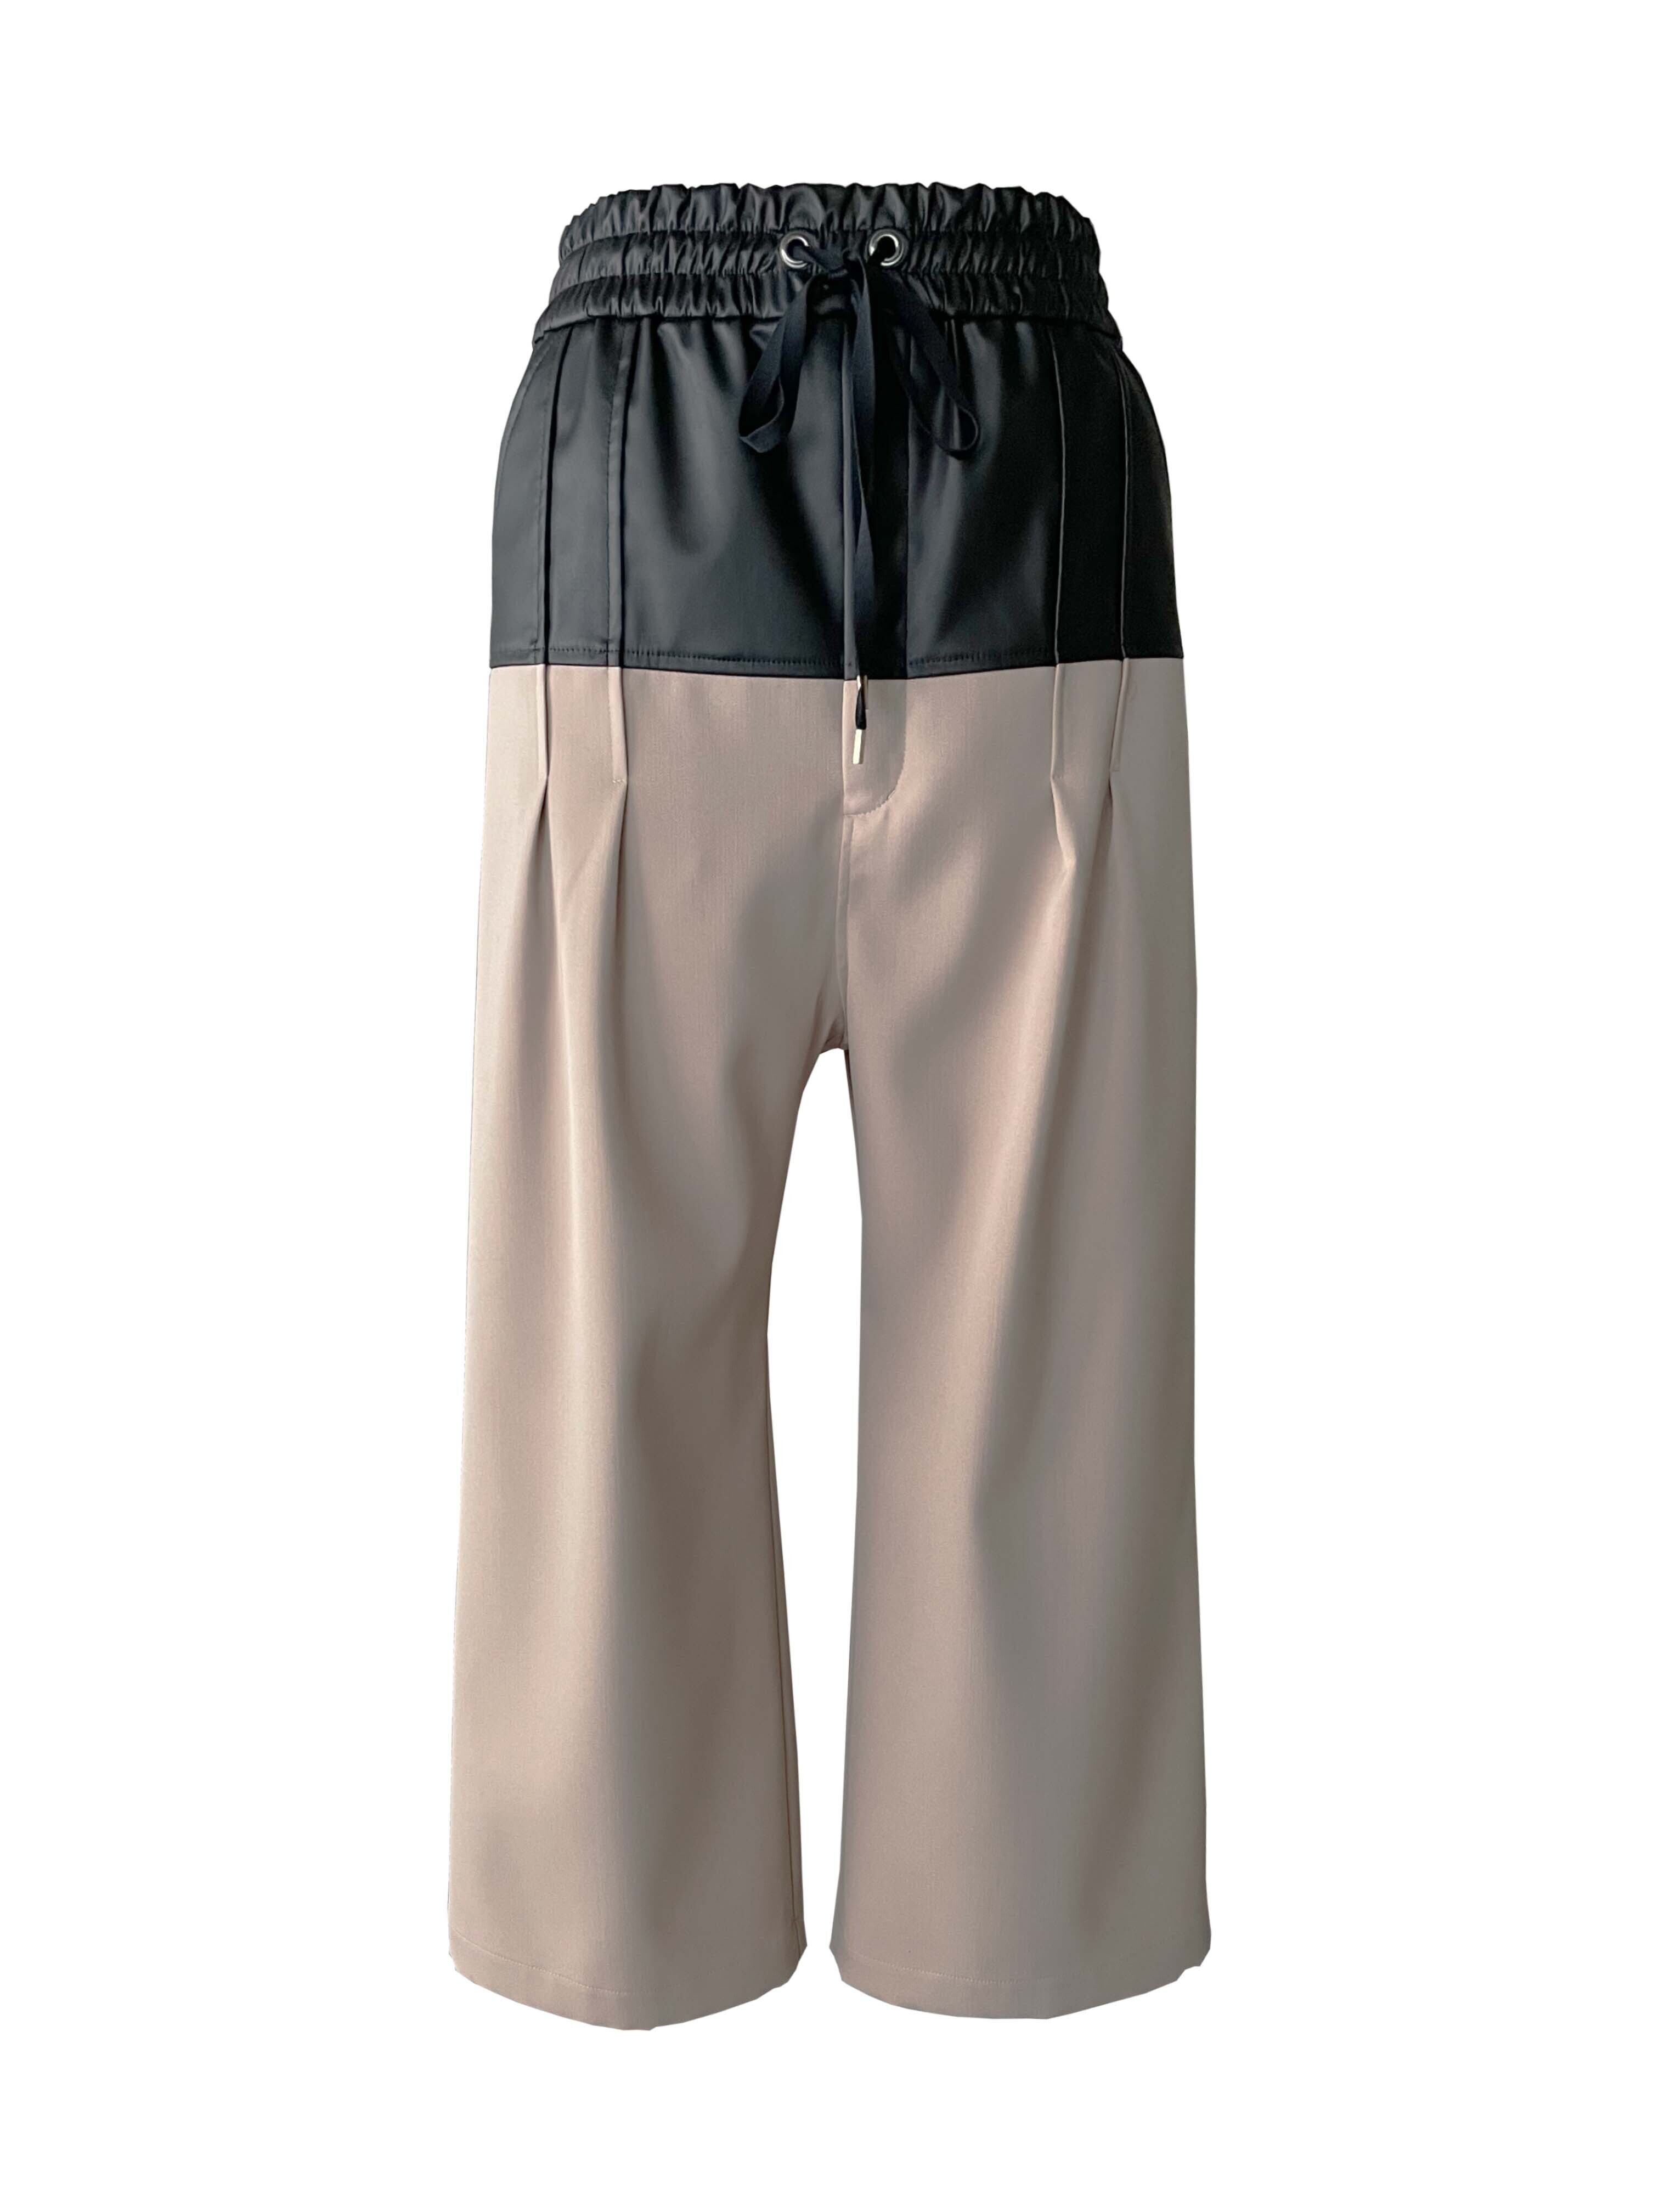 【予約 前金30%】KISHIDAMIKI   eco leather trousers